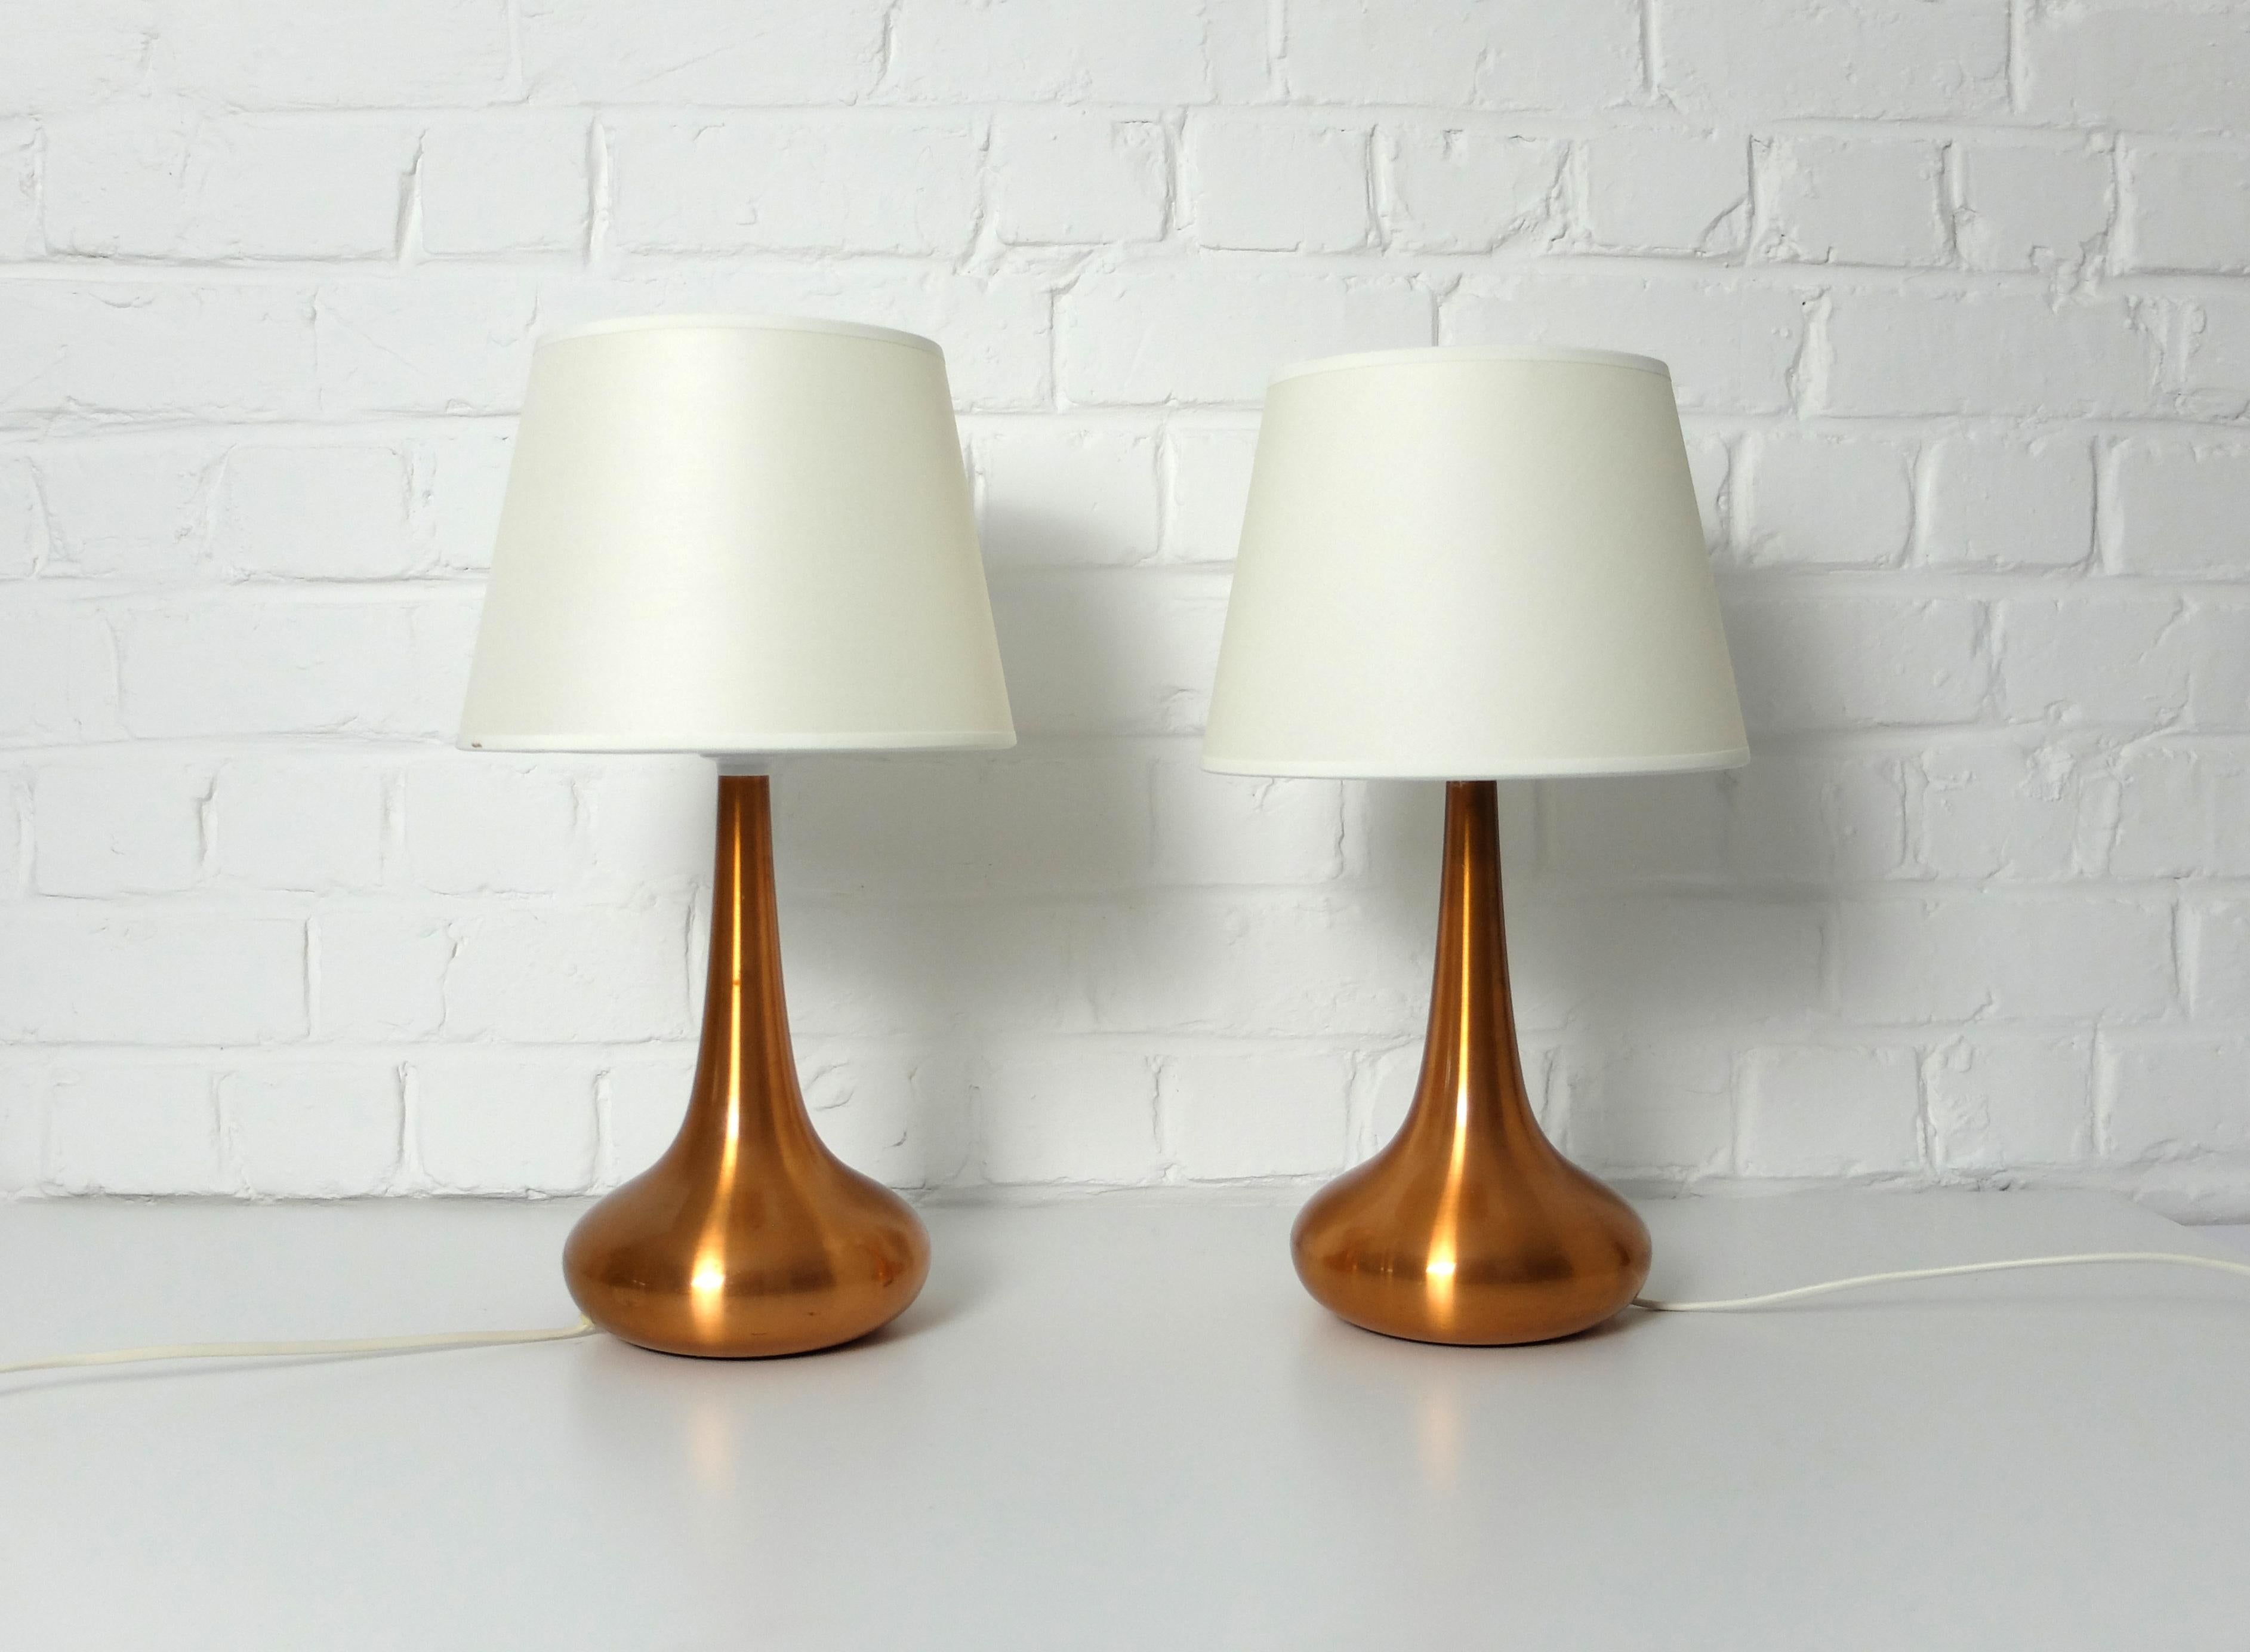 Ein Paar Orient Tischlampen aus gebürstetem Kupfer. Entwurf von Jo Hammerborg, 1957, für Fog & Morup, Dänemark. 

Jo Hammerborg ist seit über 20 Jahren künstlerischer Leiter von Fog & Morup. Er entwarf eine Vielzahl von Modellen, darunter auch die